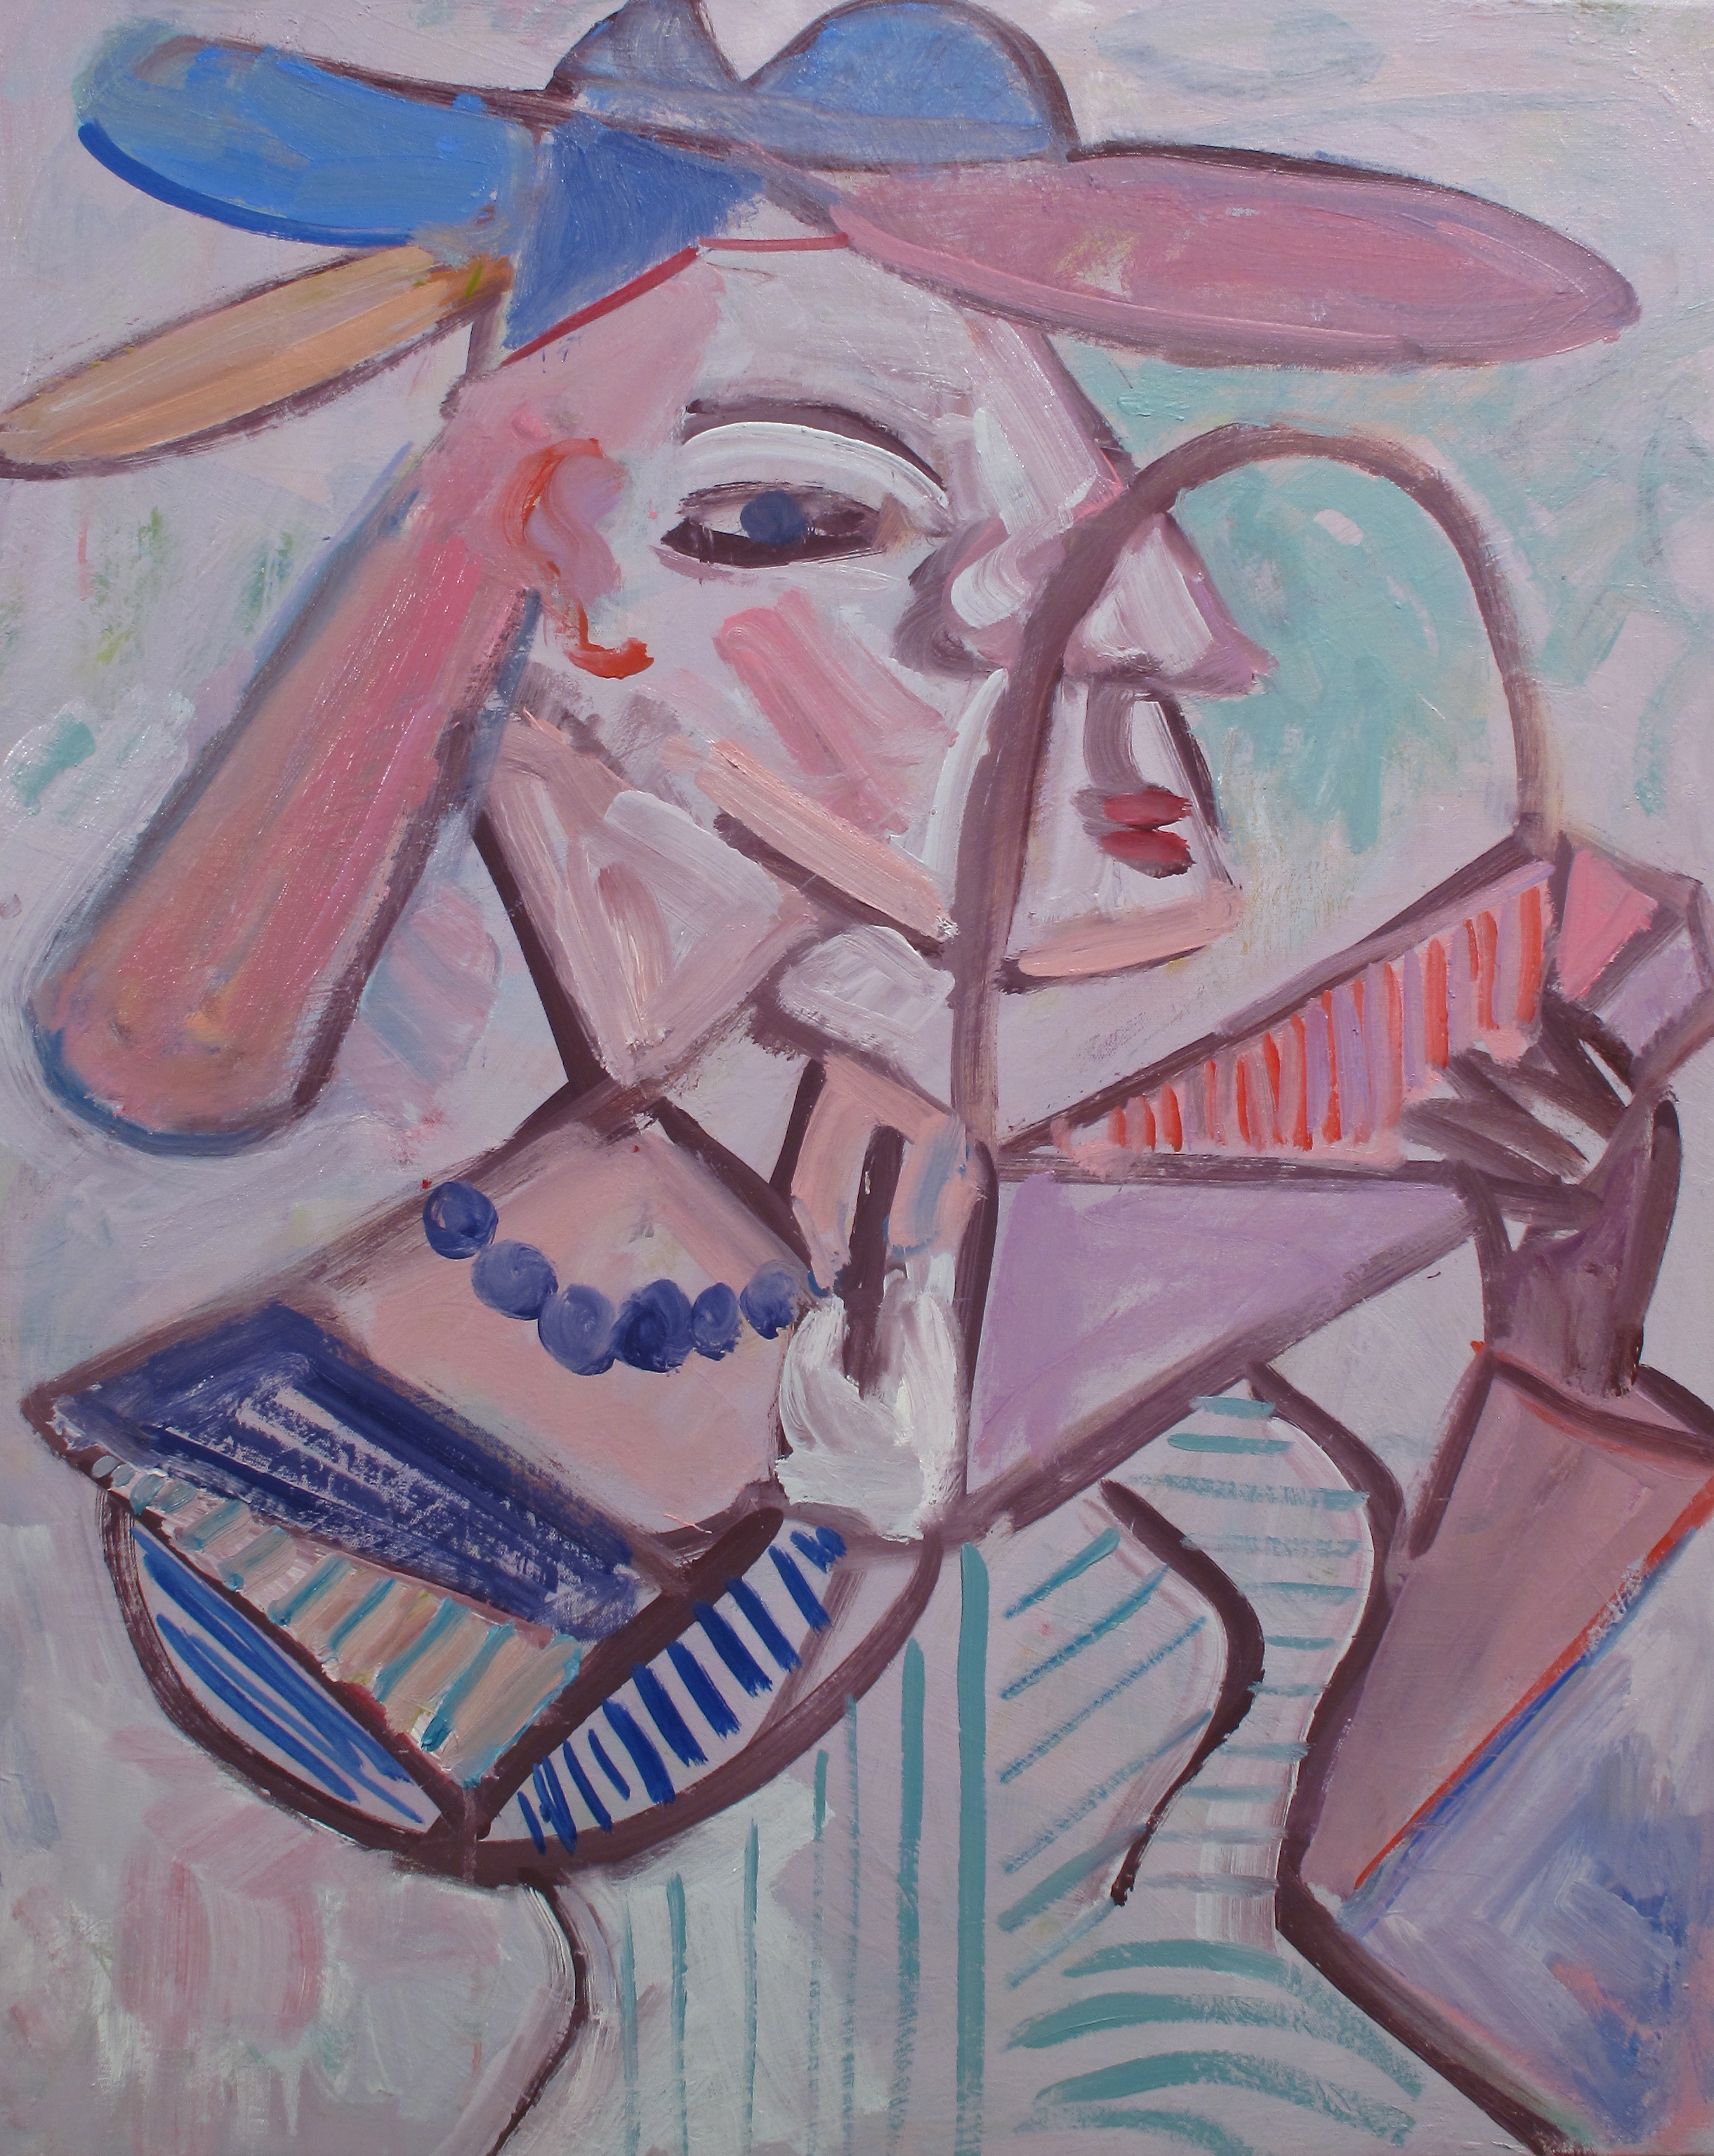  Woman with Handbag 35” x 28” oil on canvas 2011 